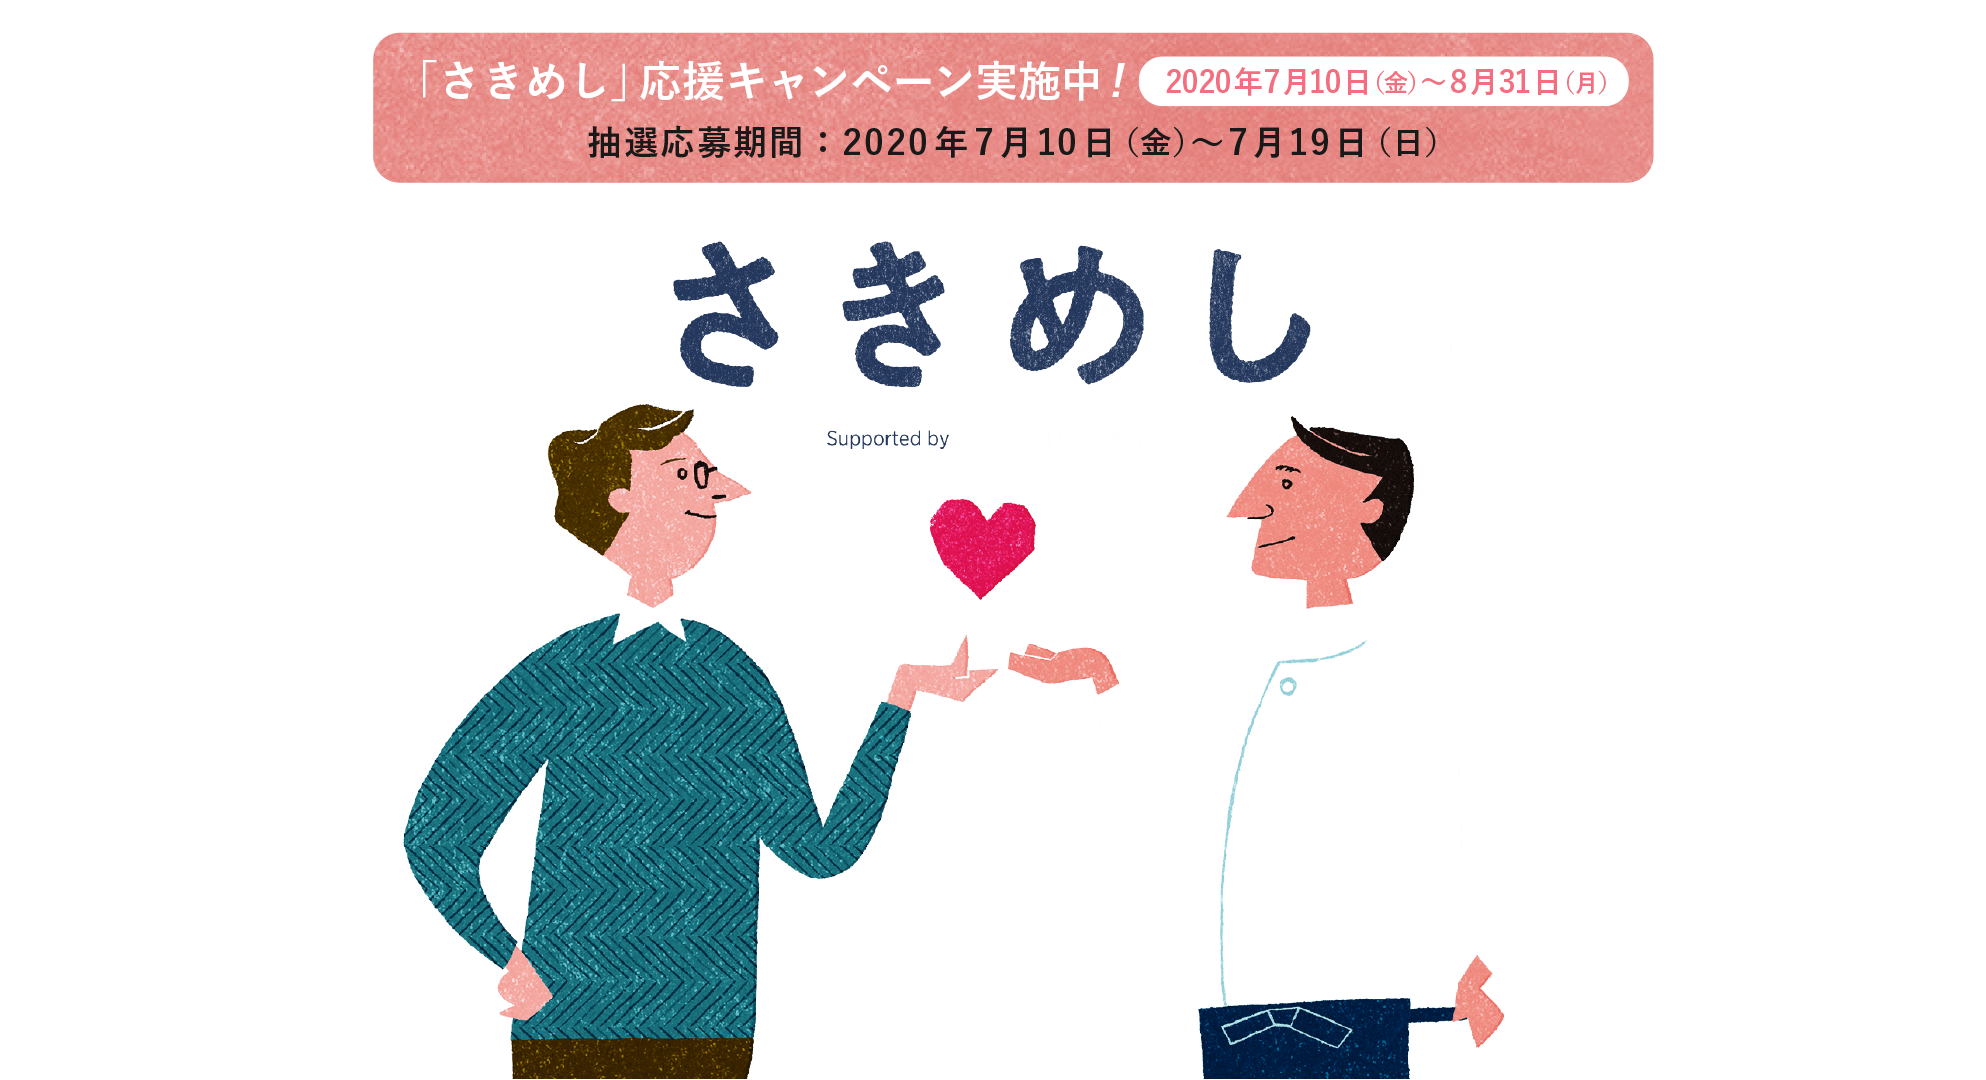 さきめし Supported by suntory